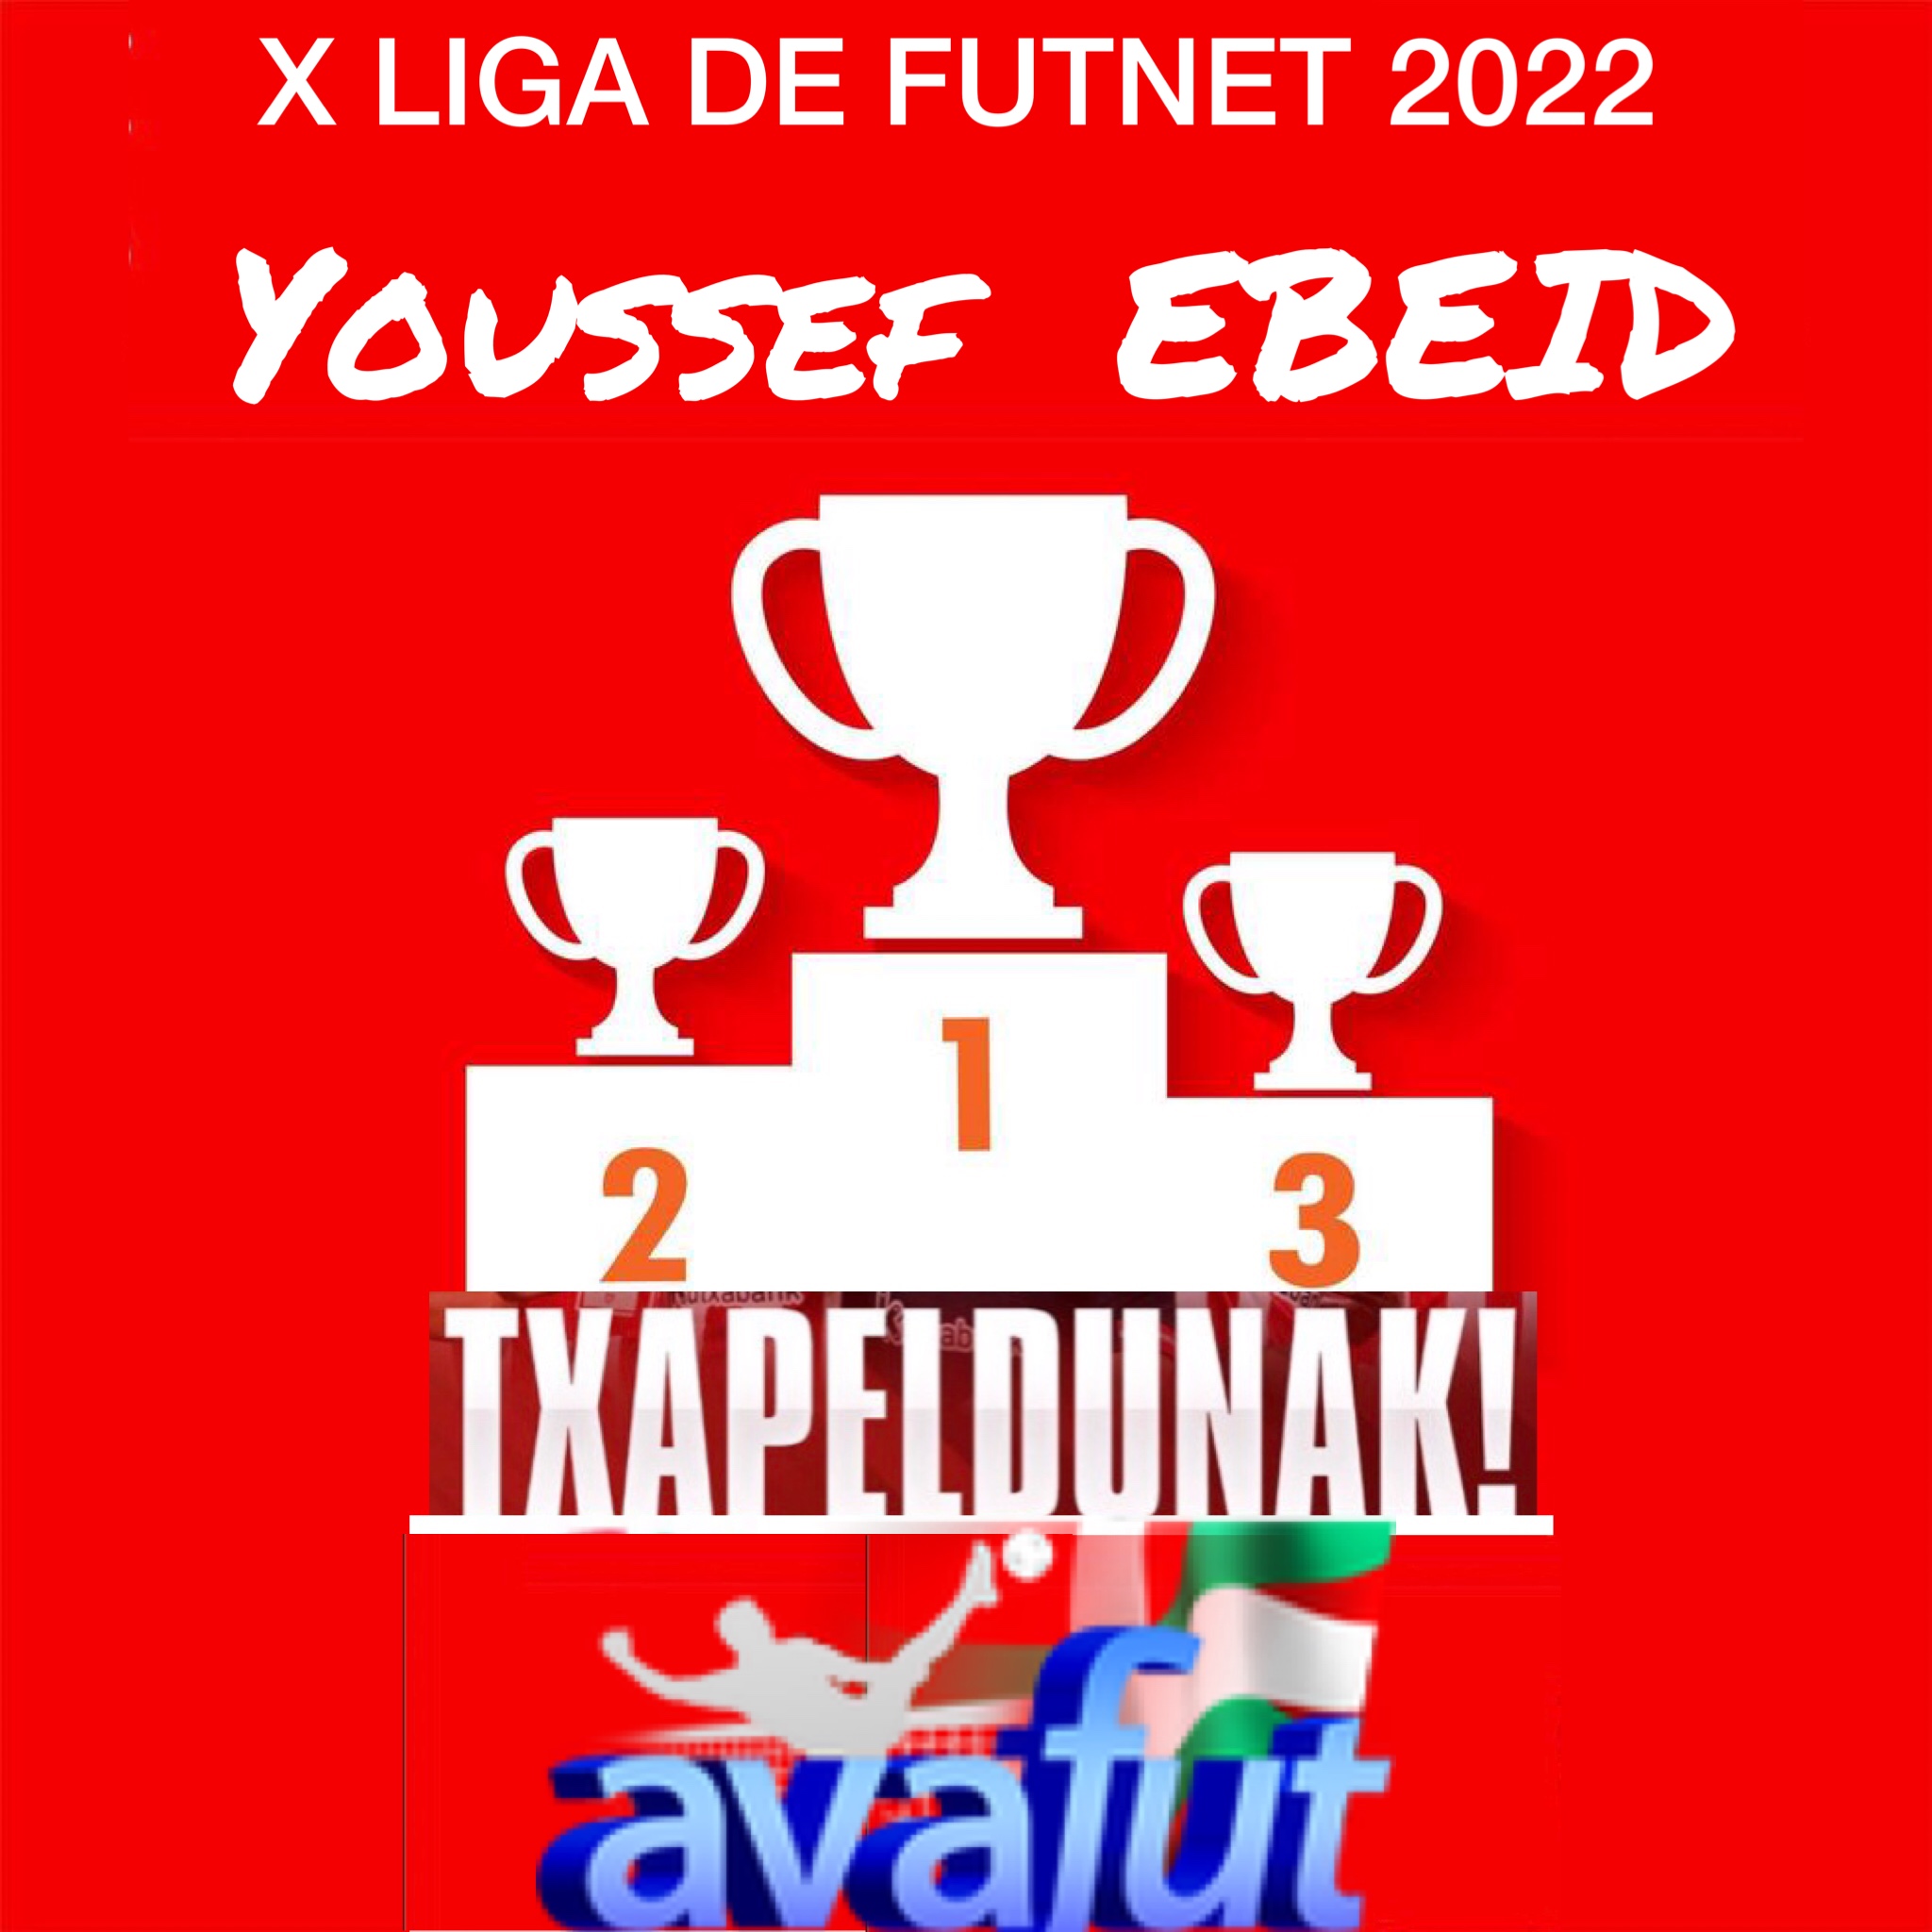 Youssef Ebeid, campeón de la Liga Mixta de Futnet.